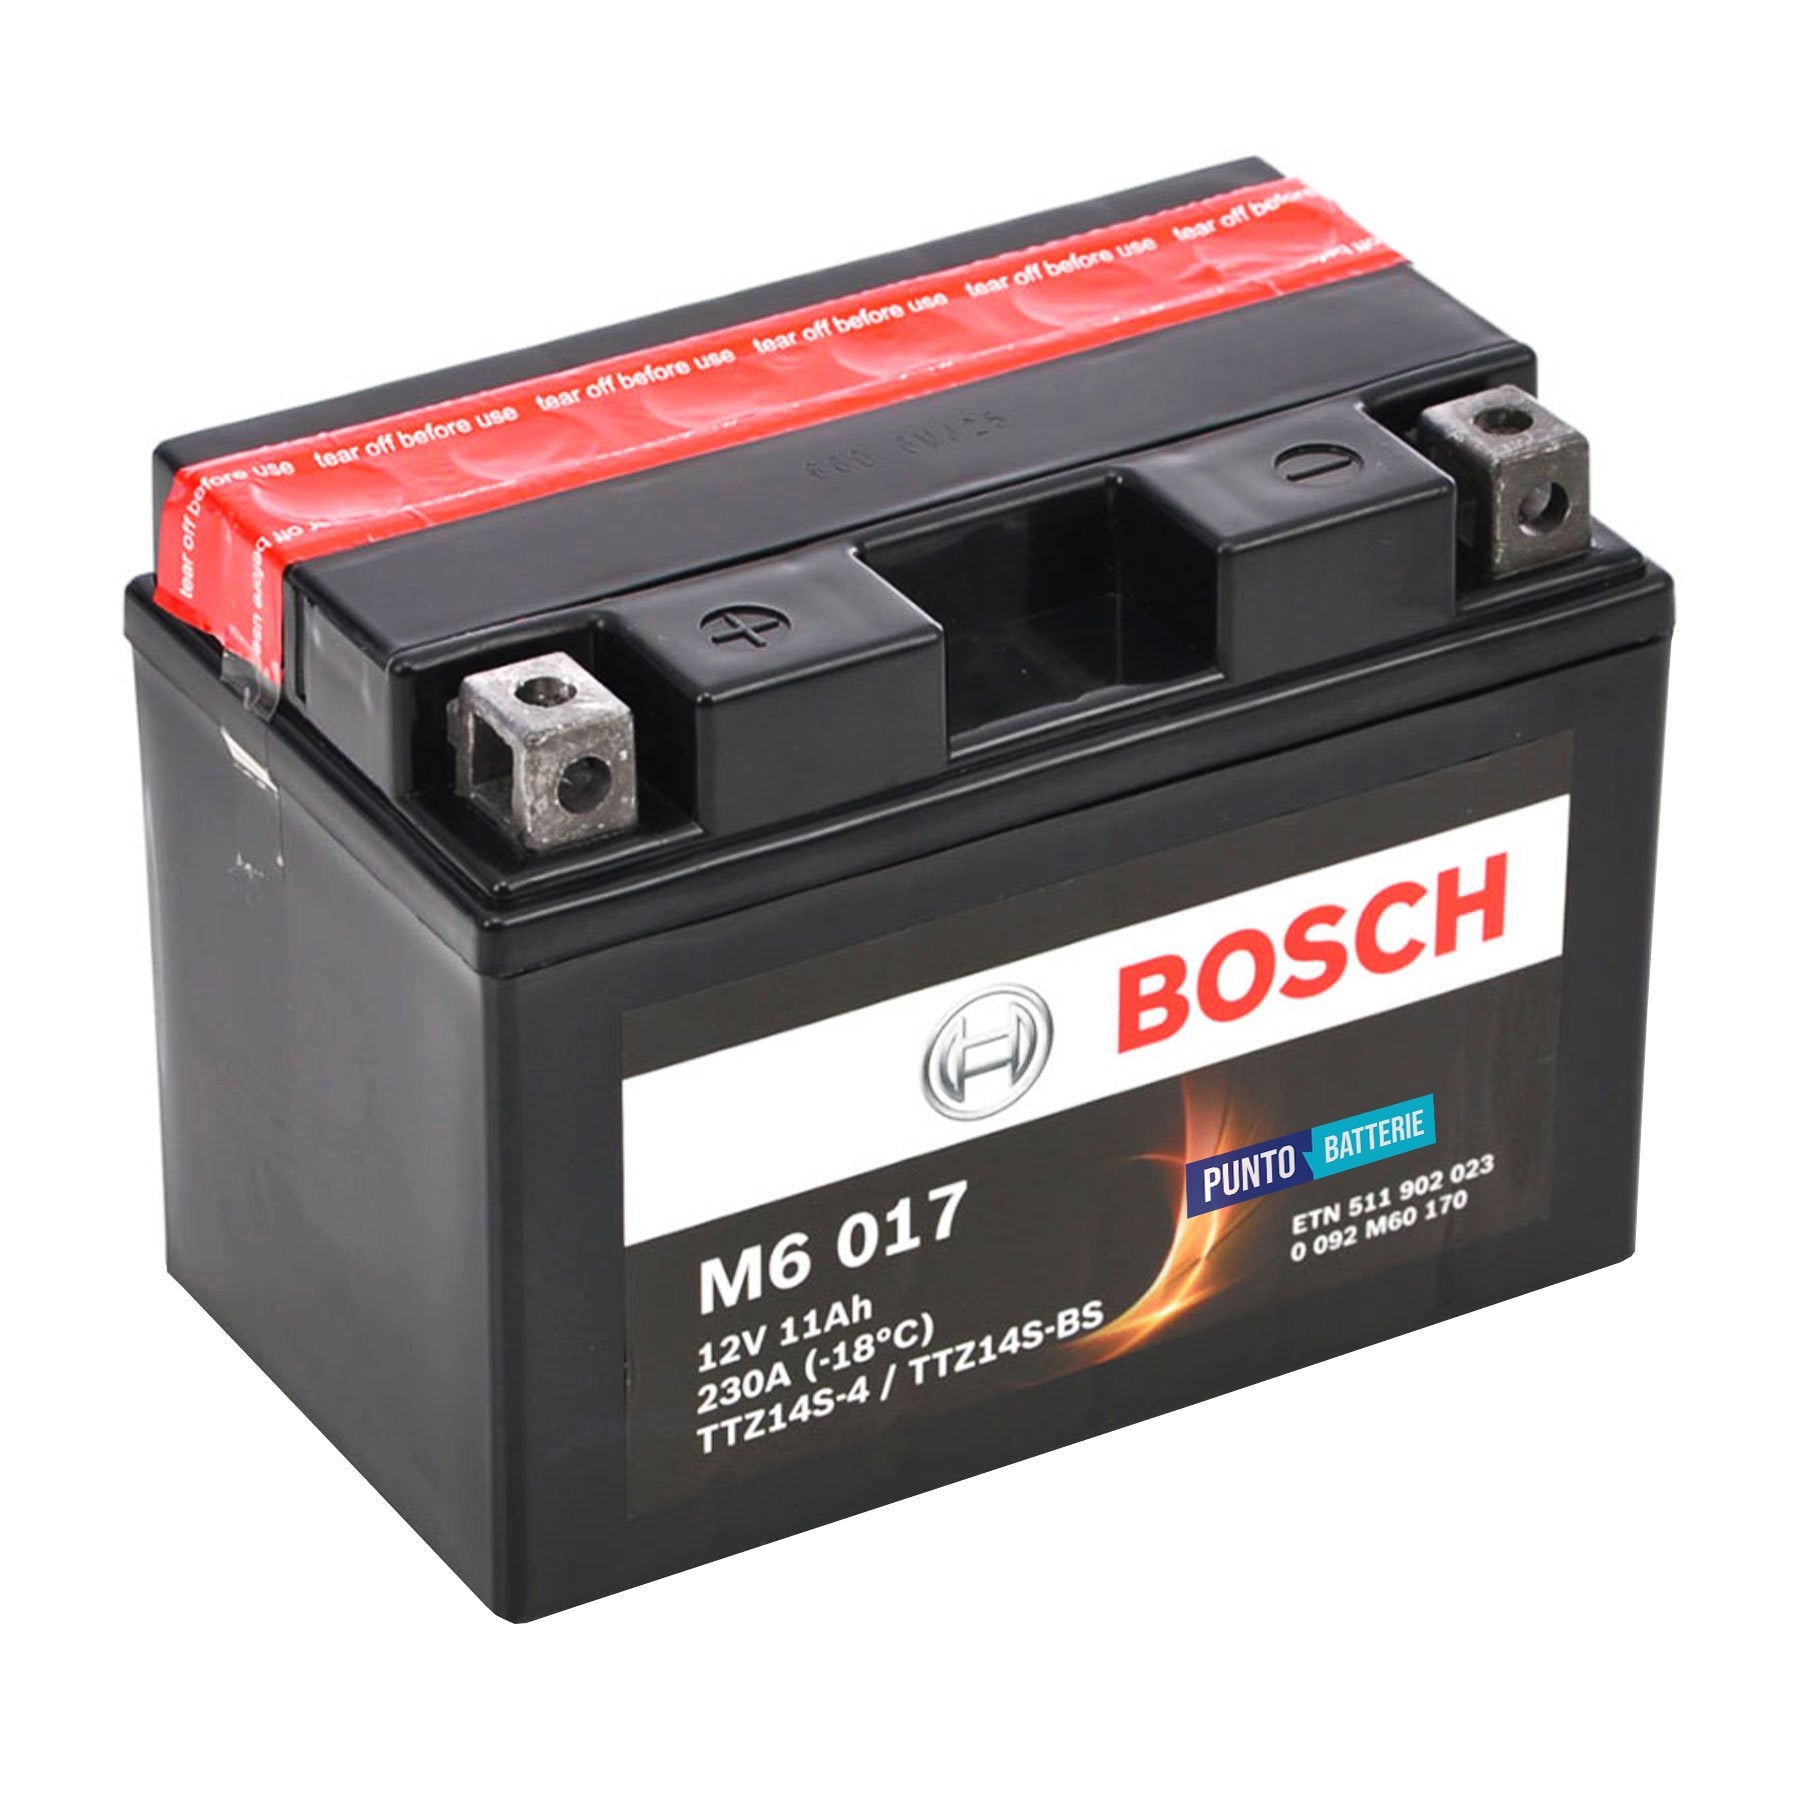 Batteria originale Bosch M6 M6017, dimensioni 150 x 87 x 105, polo positivo a sinistra, 12 volt, 11 amperora, 230 ampere. Batteria per moto, scooter e powersport.